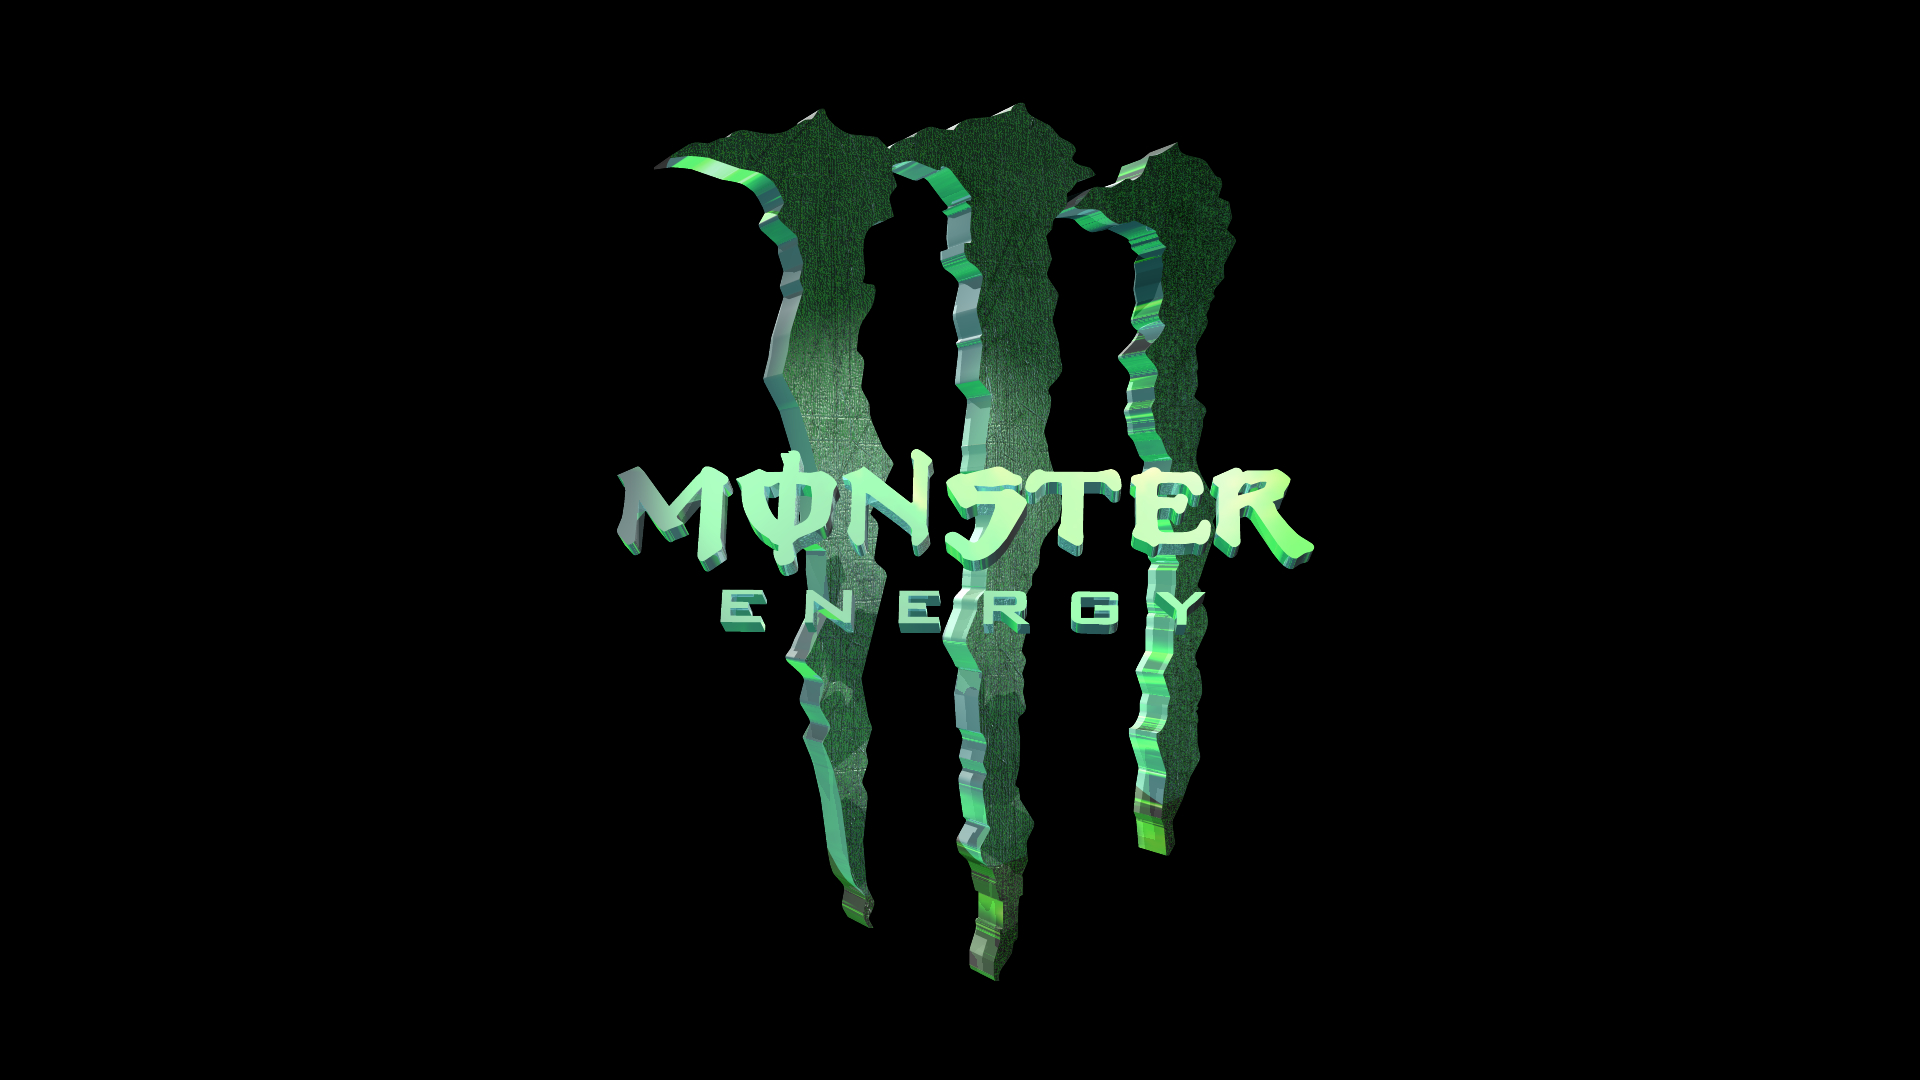 3D Monster Energy monster energy drink 23885321 1920 1080jpg